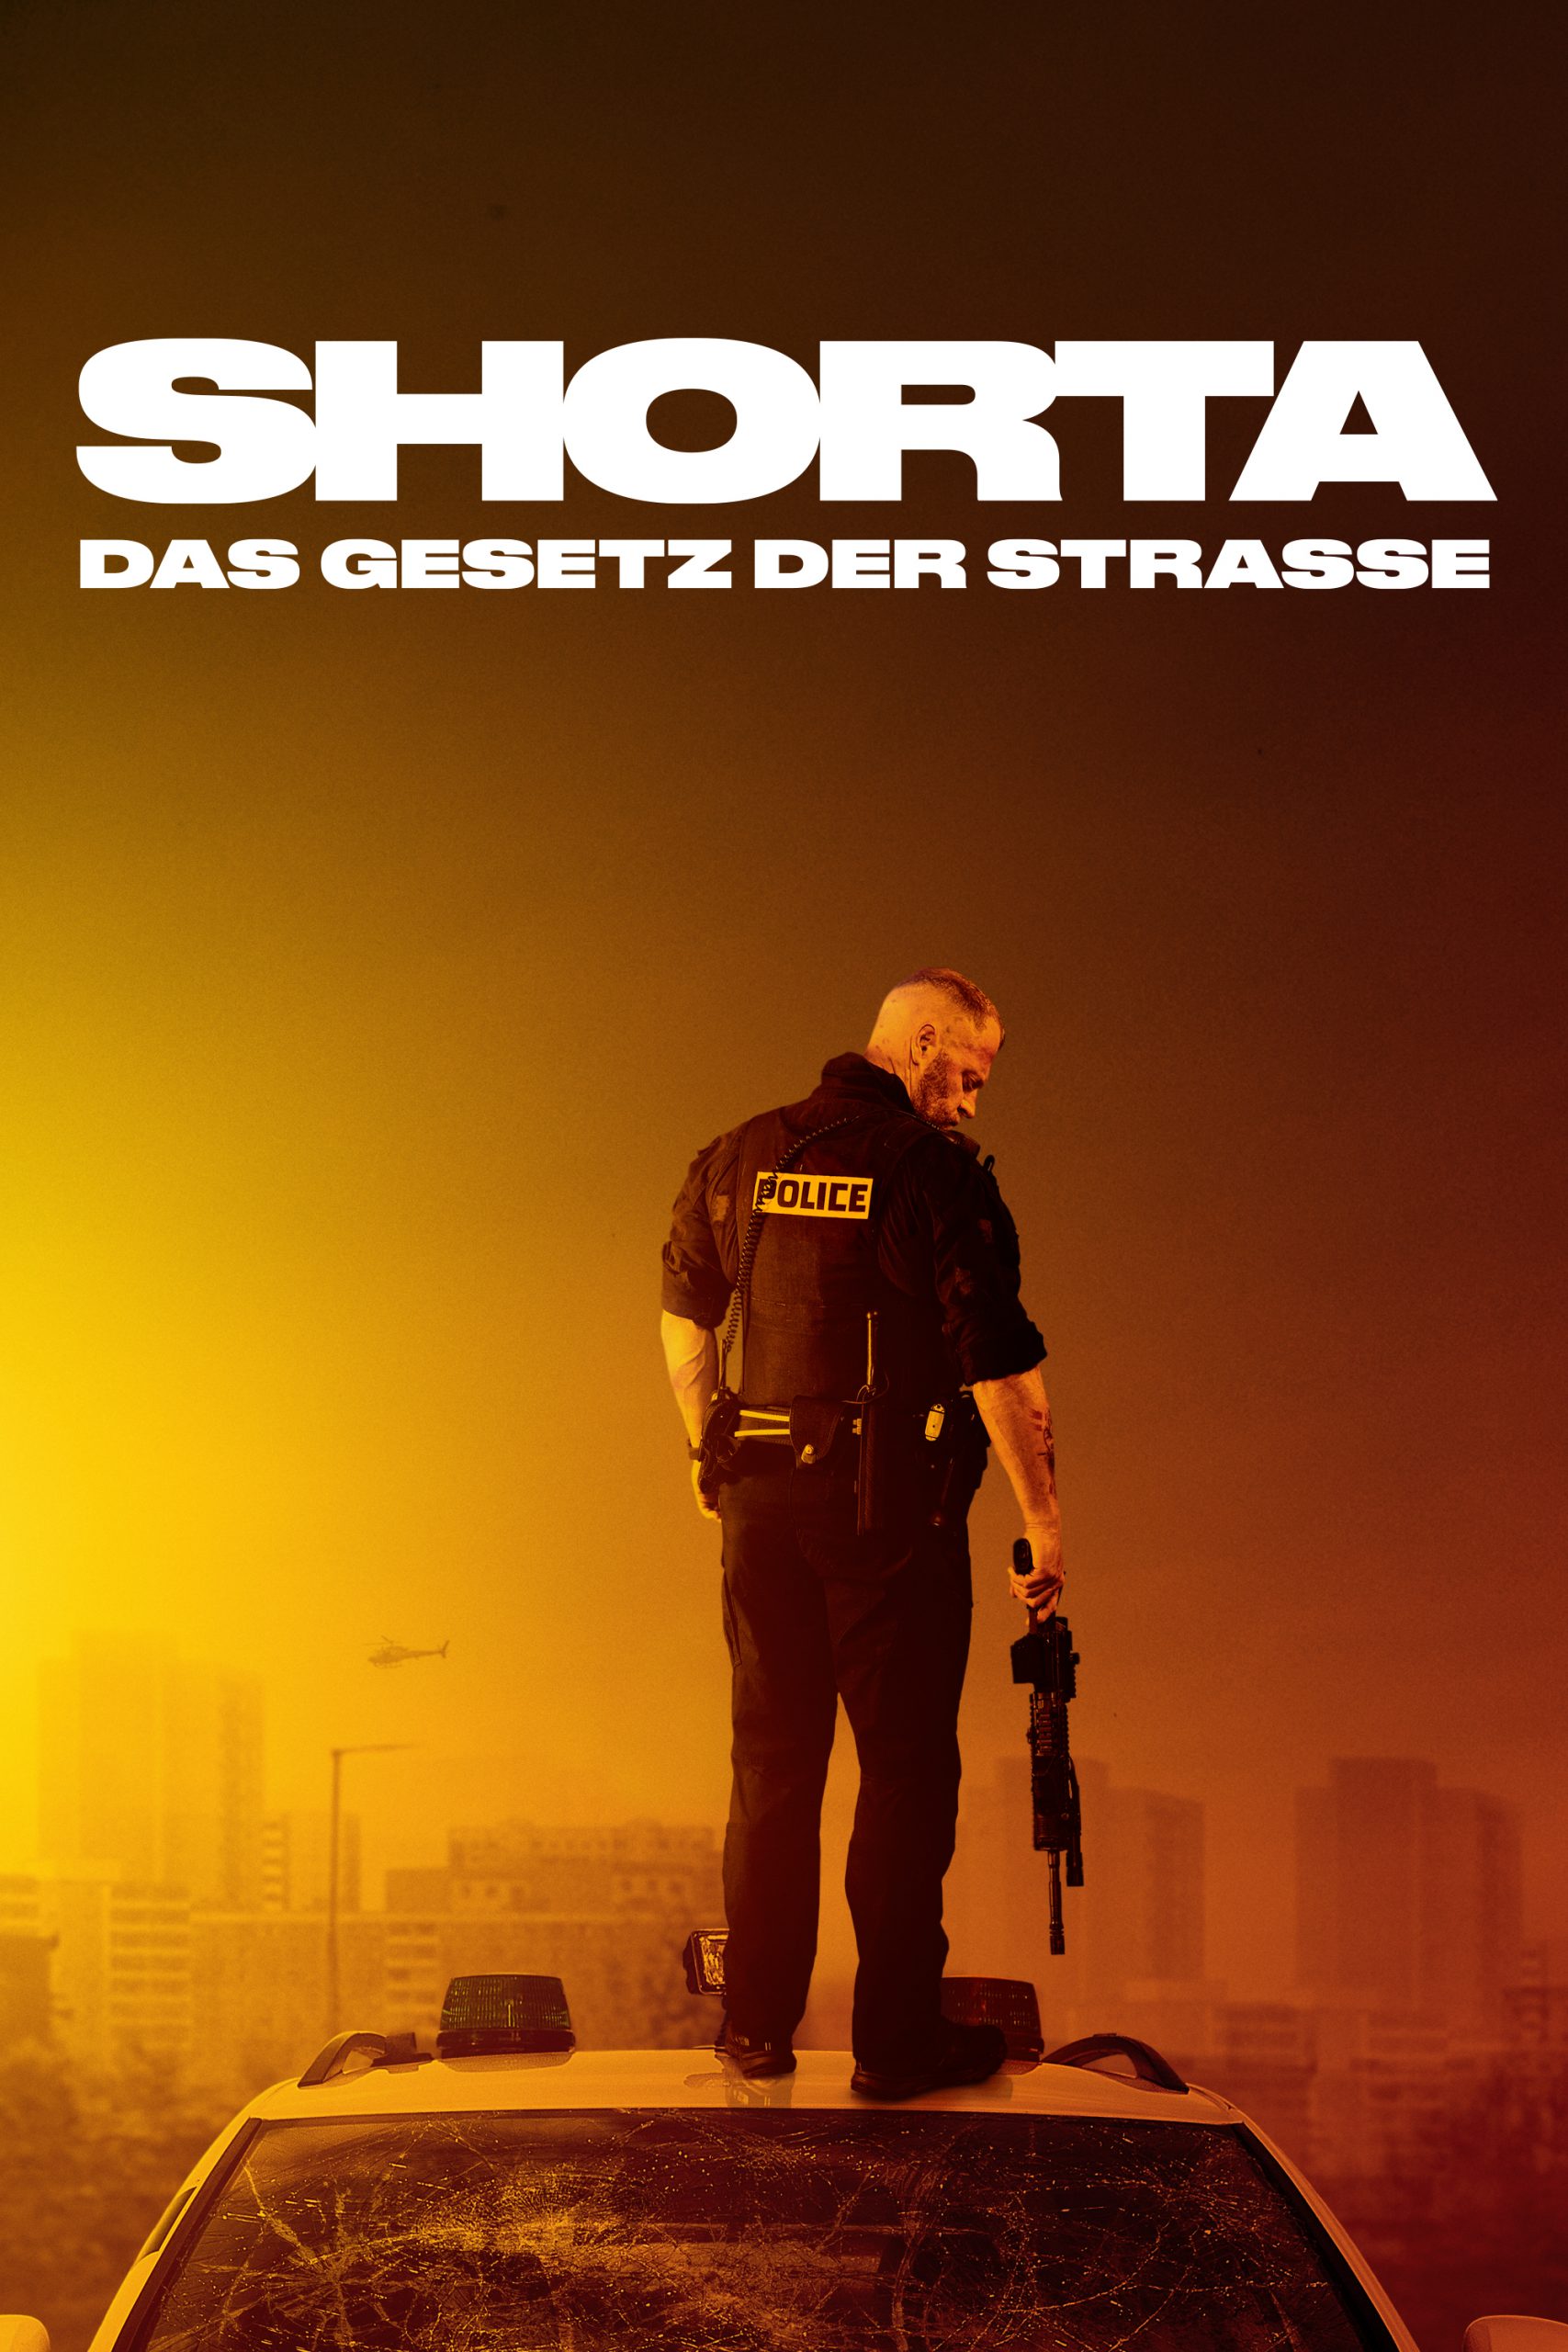 SHORTA – DAS GESETZ DER STRASSE AB 27. Mai 2021 als Blu-ray